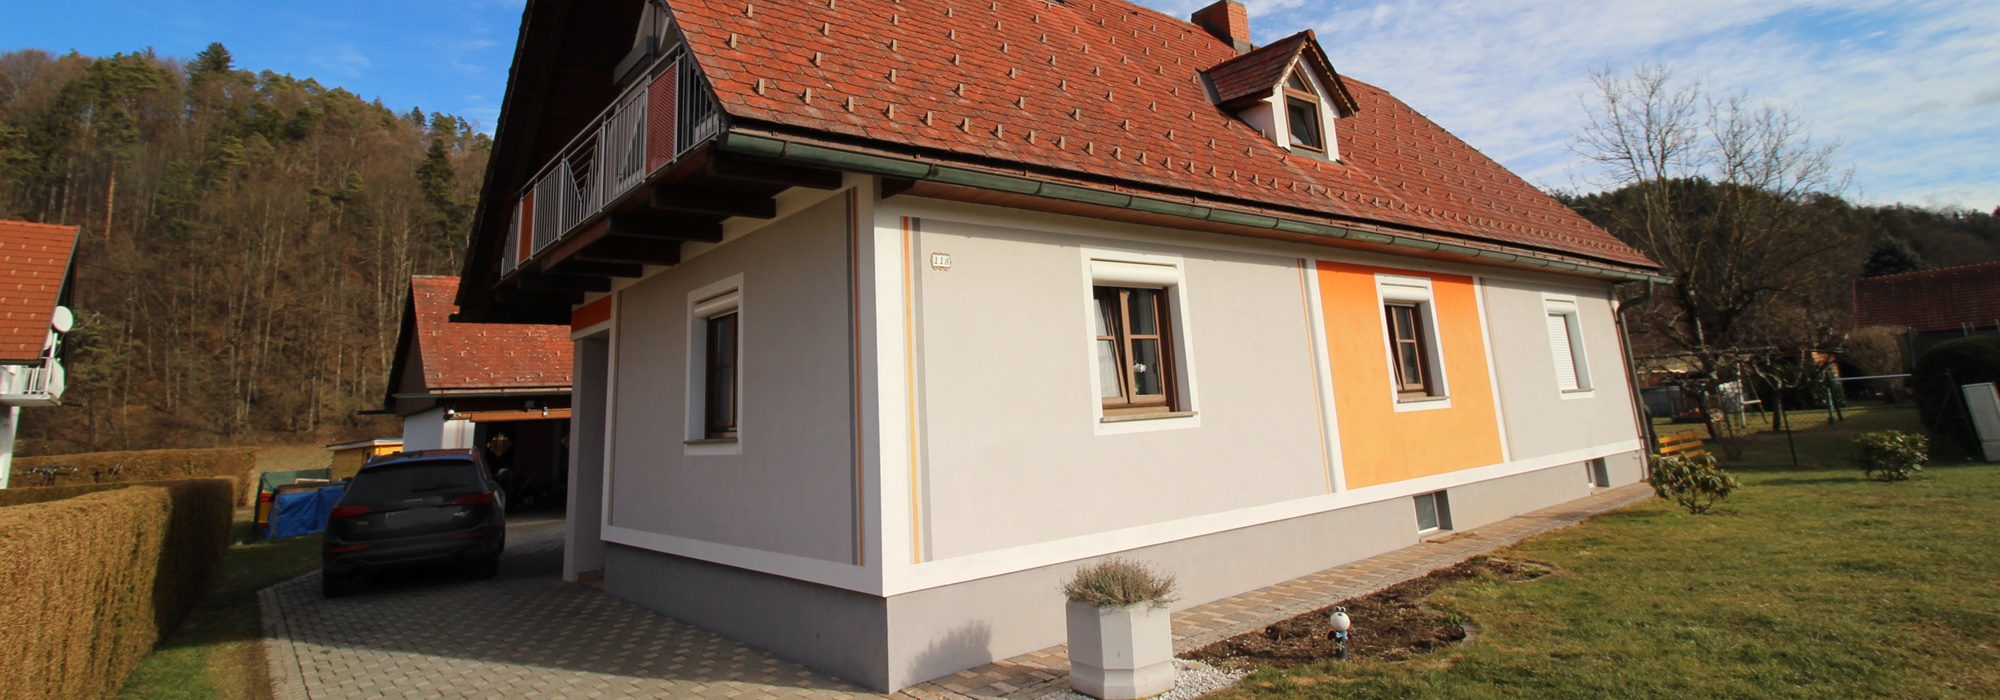 Sonnig und ruhig gelegenes, gepflegtes Wohnhaus mit ca. 135 m2 und 1007 m2 Grundfläche in 8454 Arnfels zu verkaufen